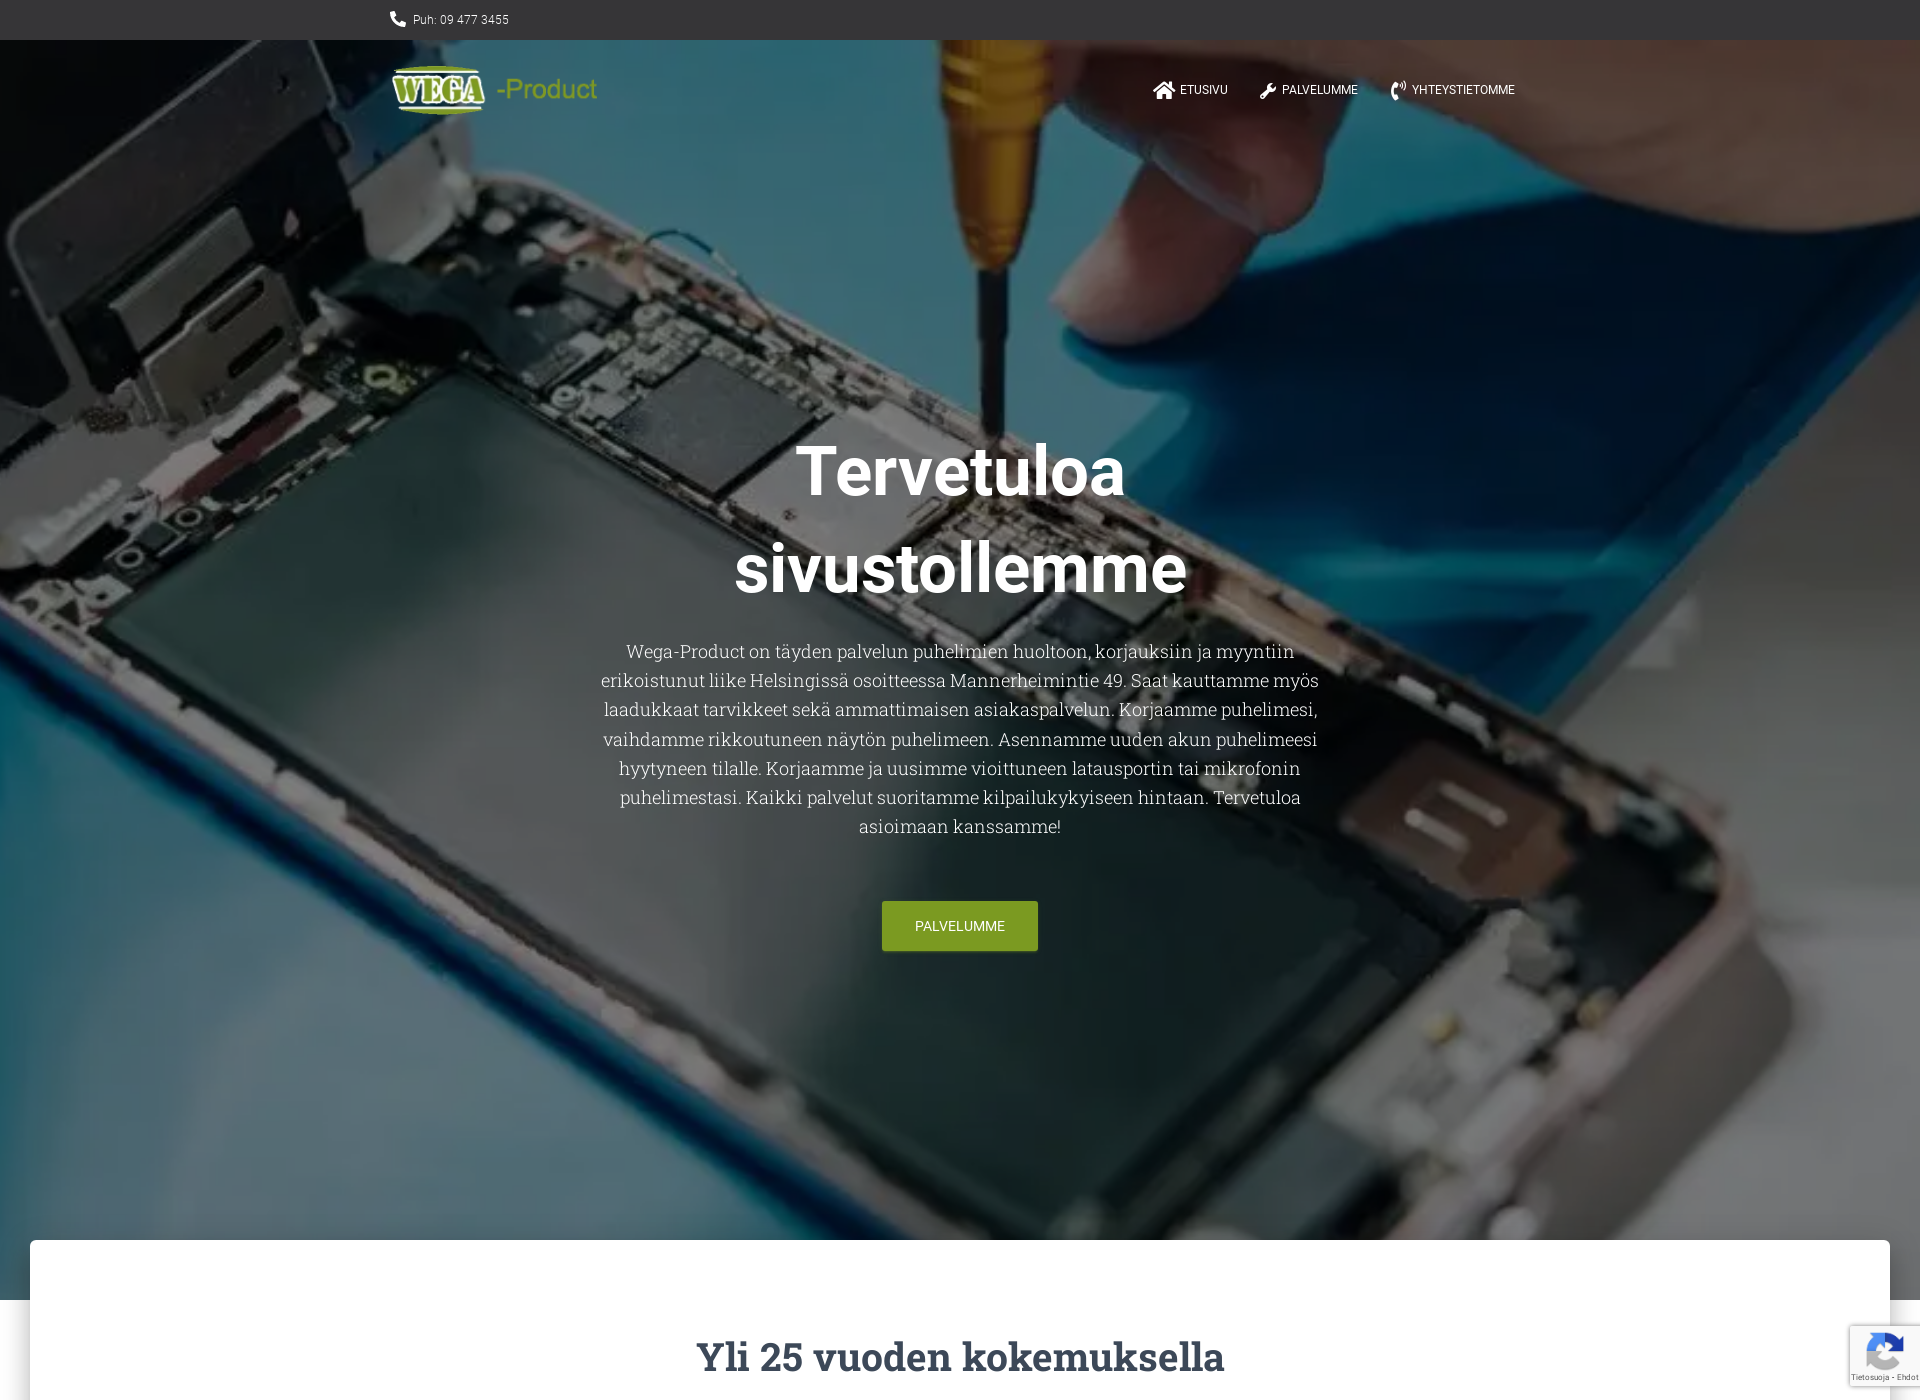 Screenshot for wega-product.fi